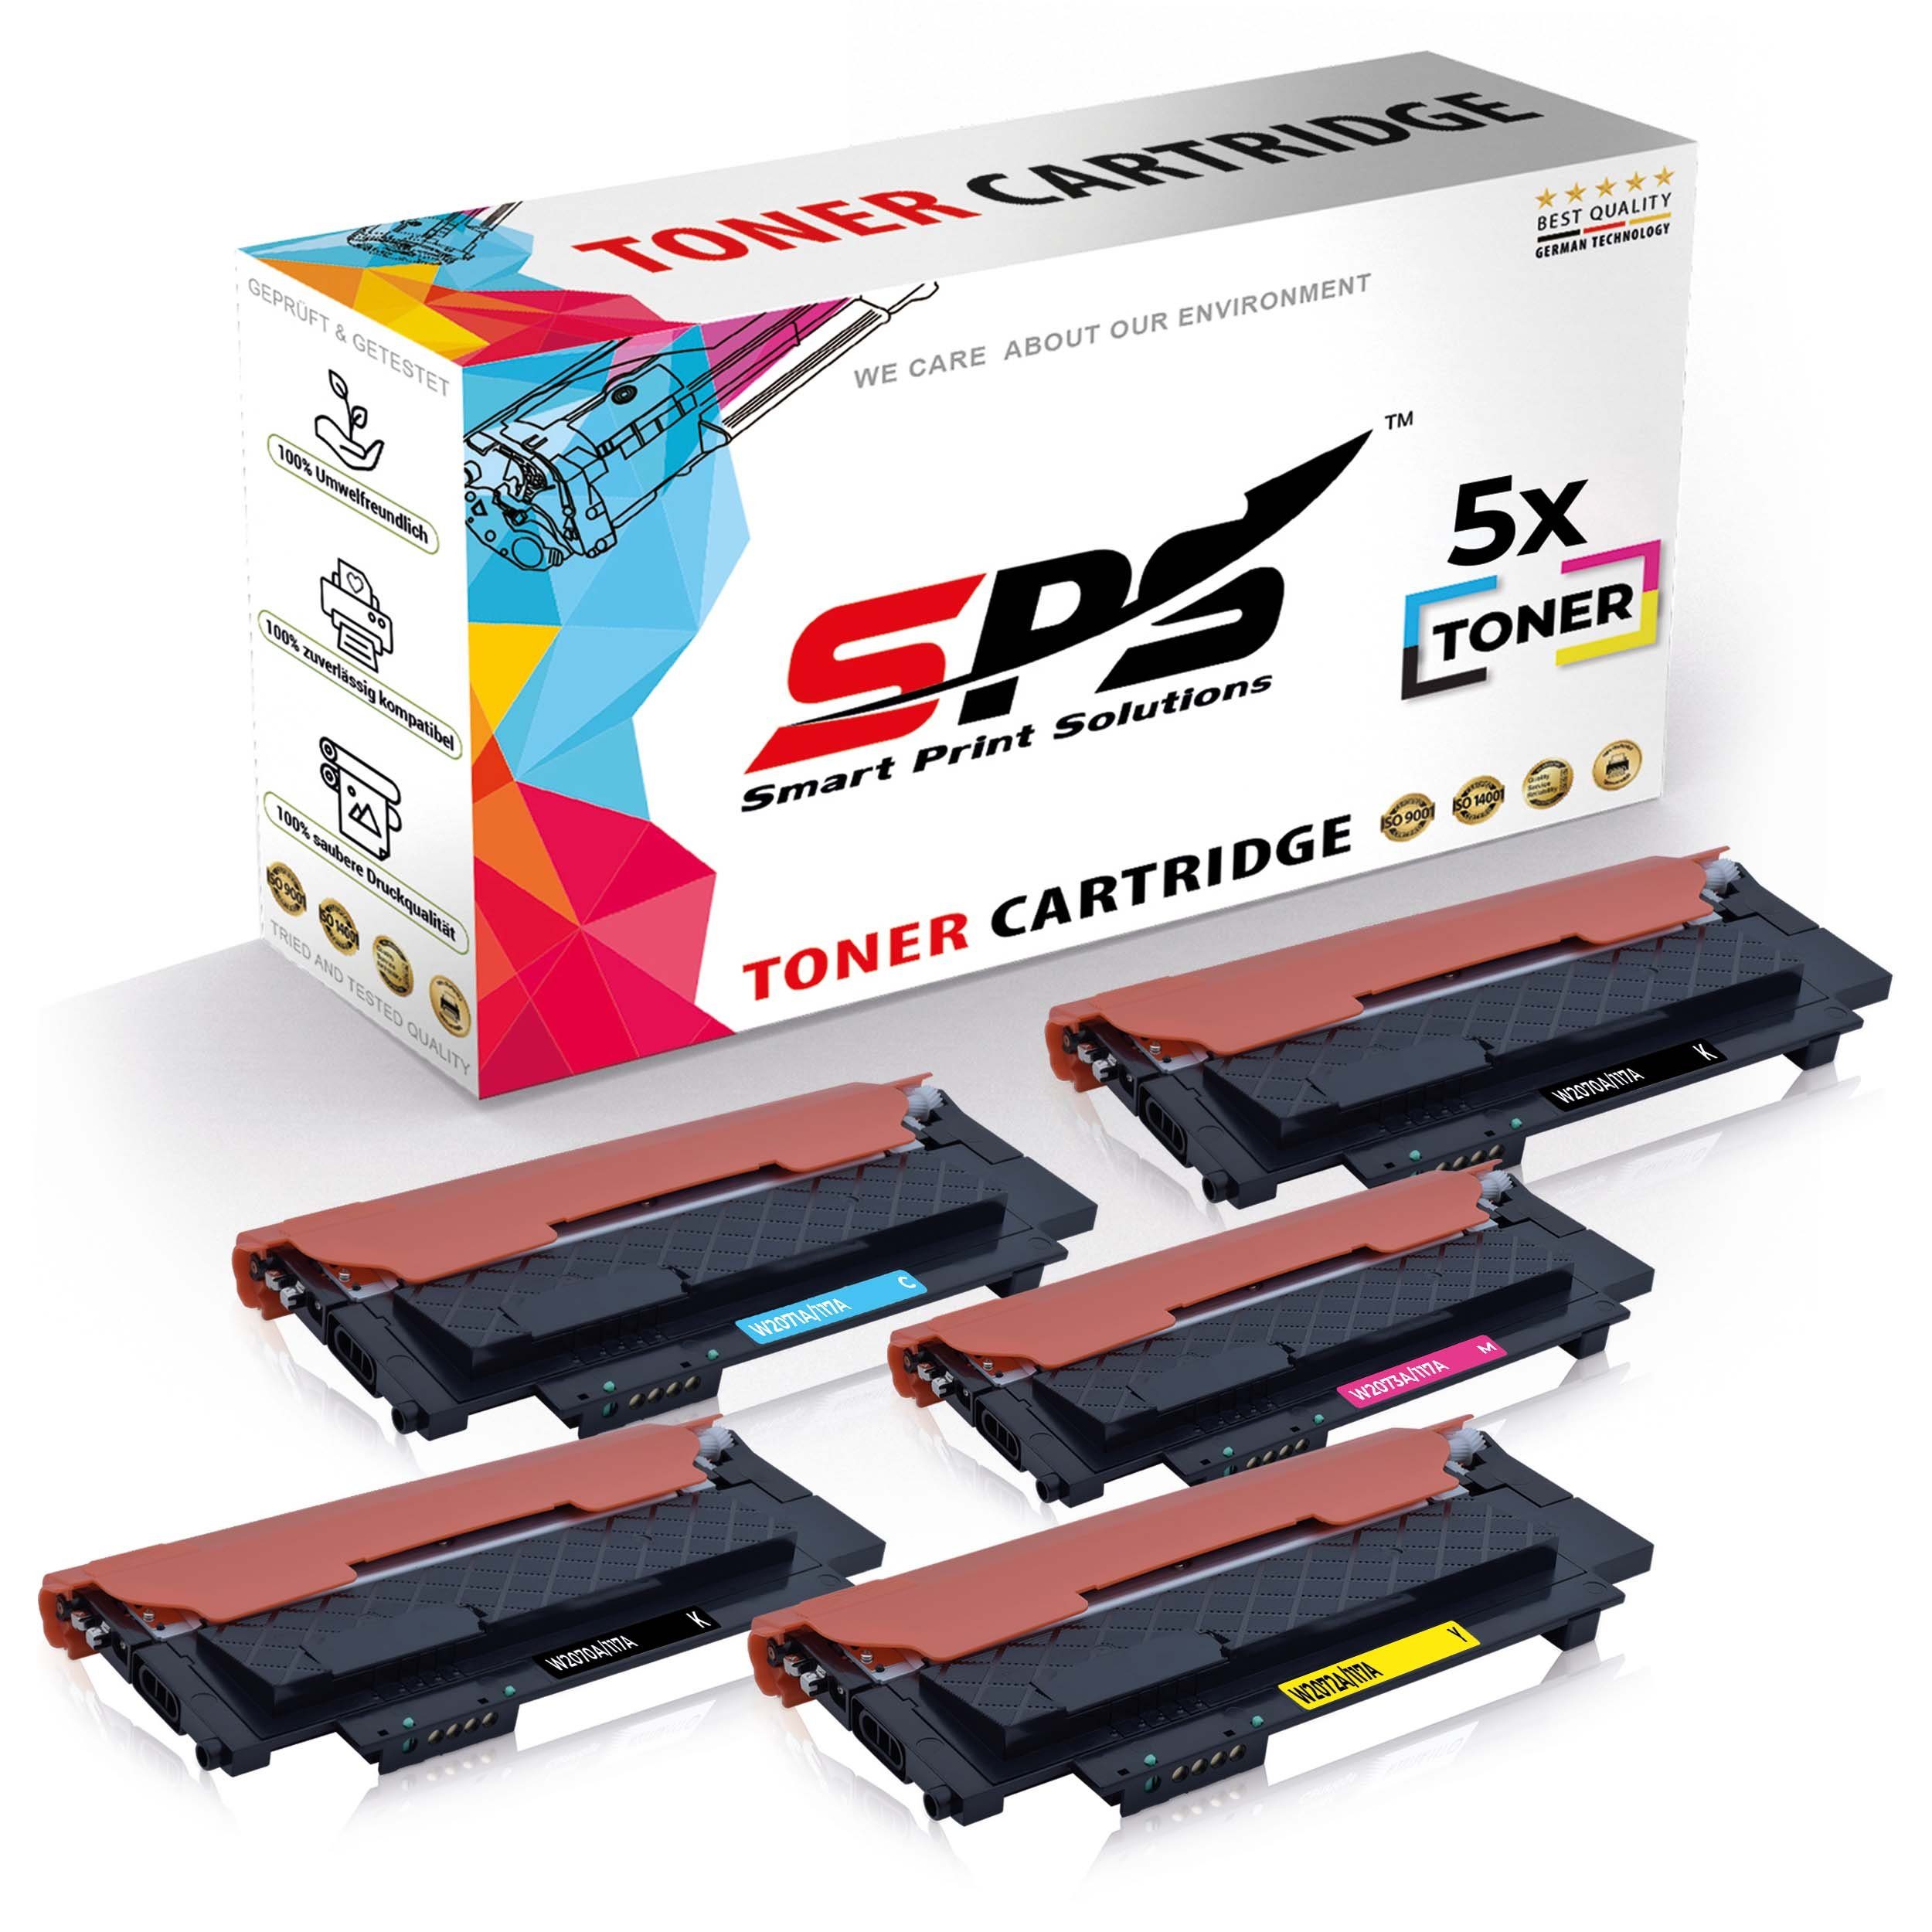 SPS Tonerkartusche 5x Multipack Set Kompatibel für HP Color Laser, (5er Pack, 5x Toner)